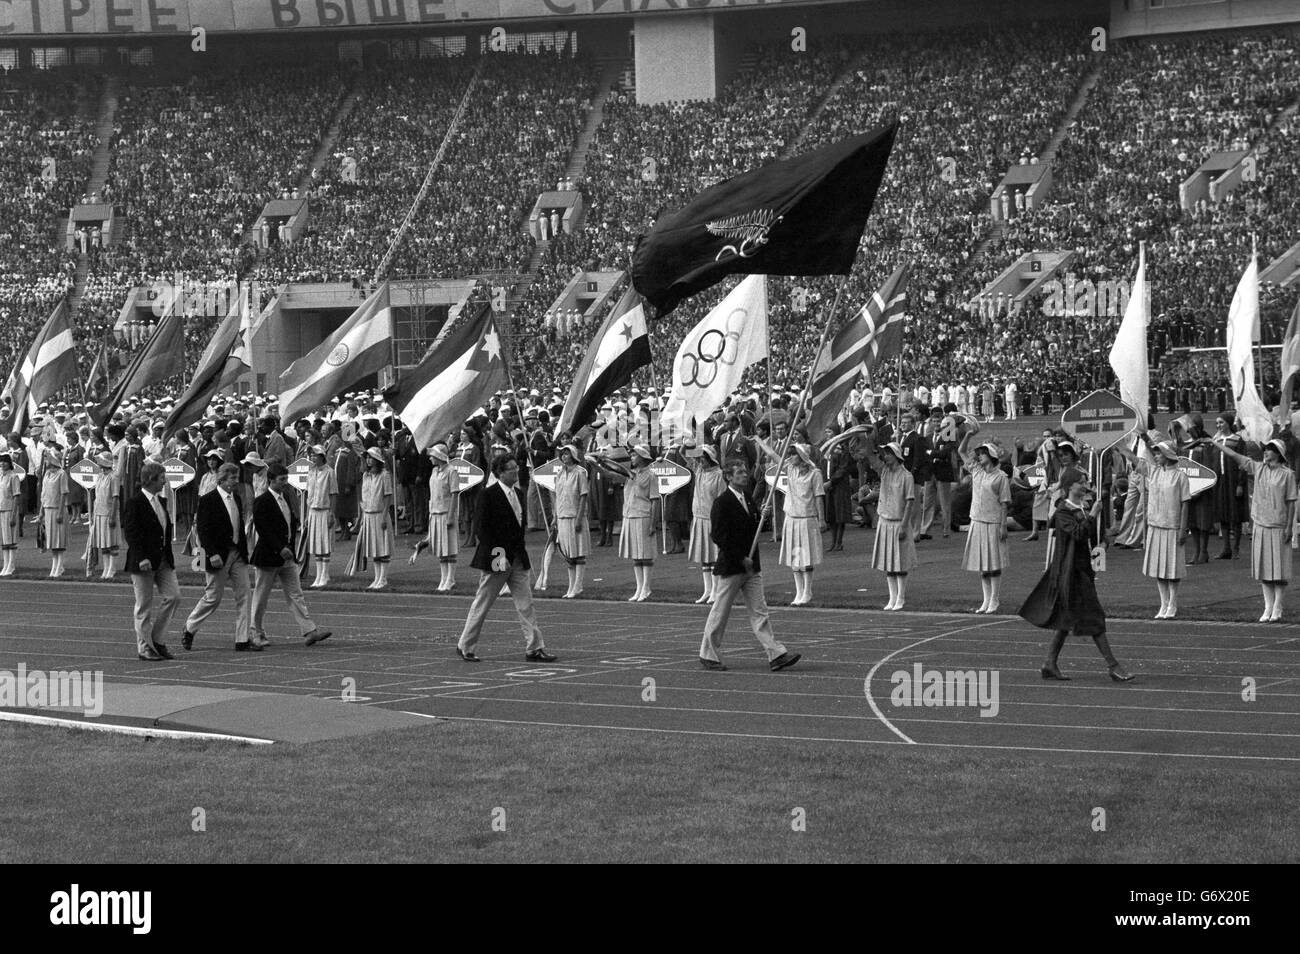 L'équipe néo-zélandaise entre dans le stade derrière son porte-drapeau. Alors que la Nouvelle-Zélande boycottait officiellement les jeux, leurs athlètes se sont affrontés sous le drapeau de l'Association des Jeux olympiques et du Commonwealth de Nouvelle-Zélande. Banque D'Images